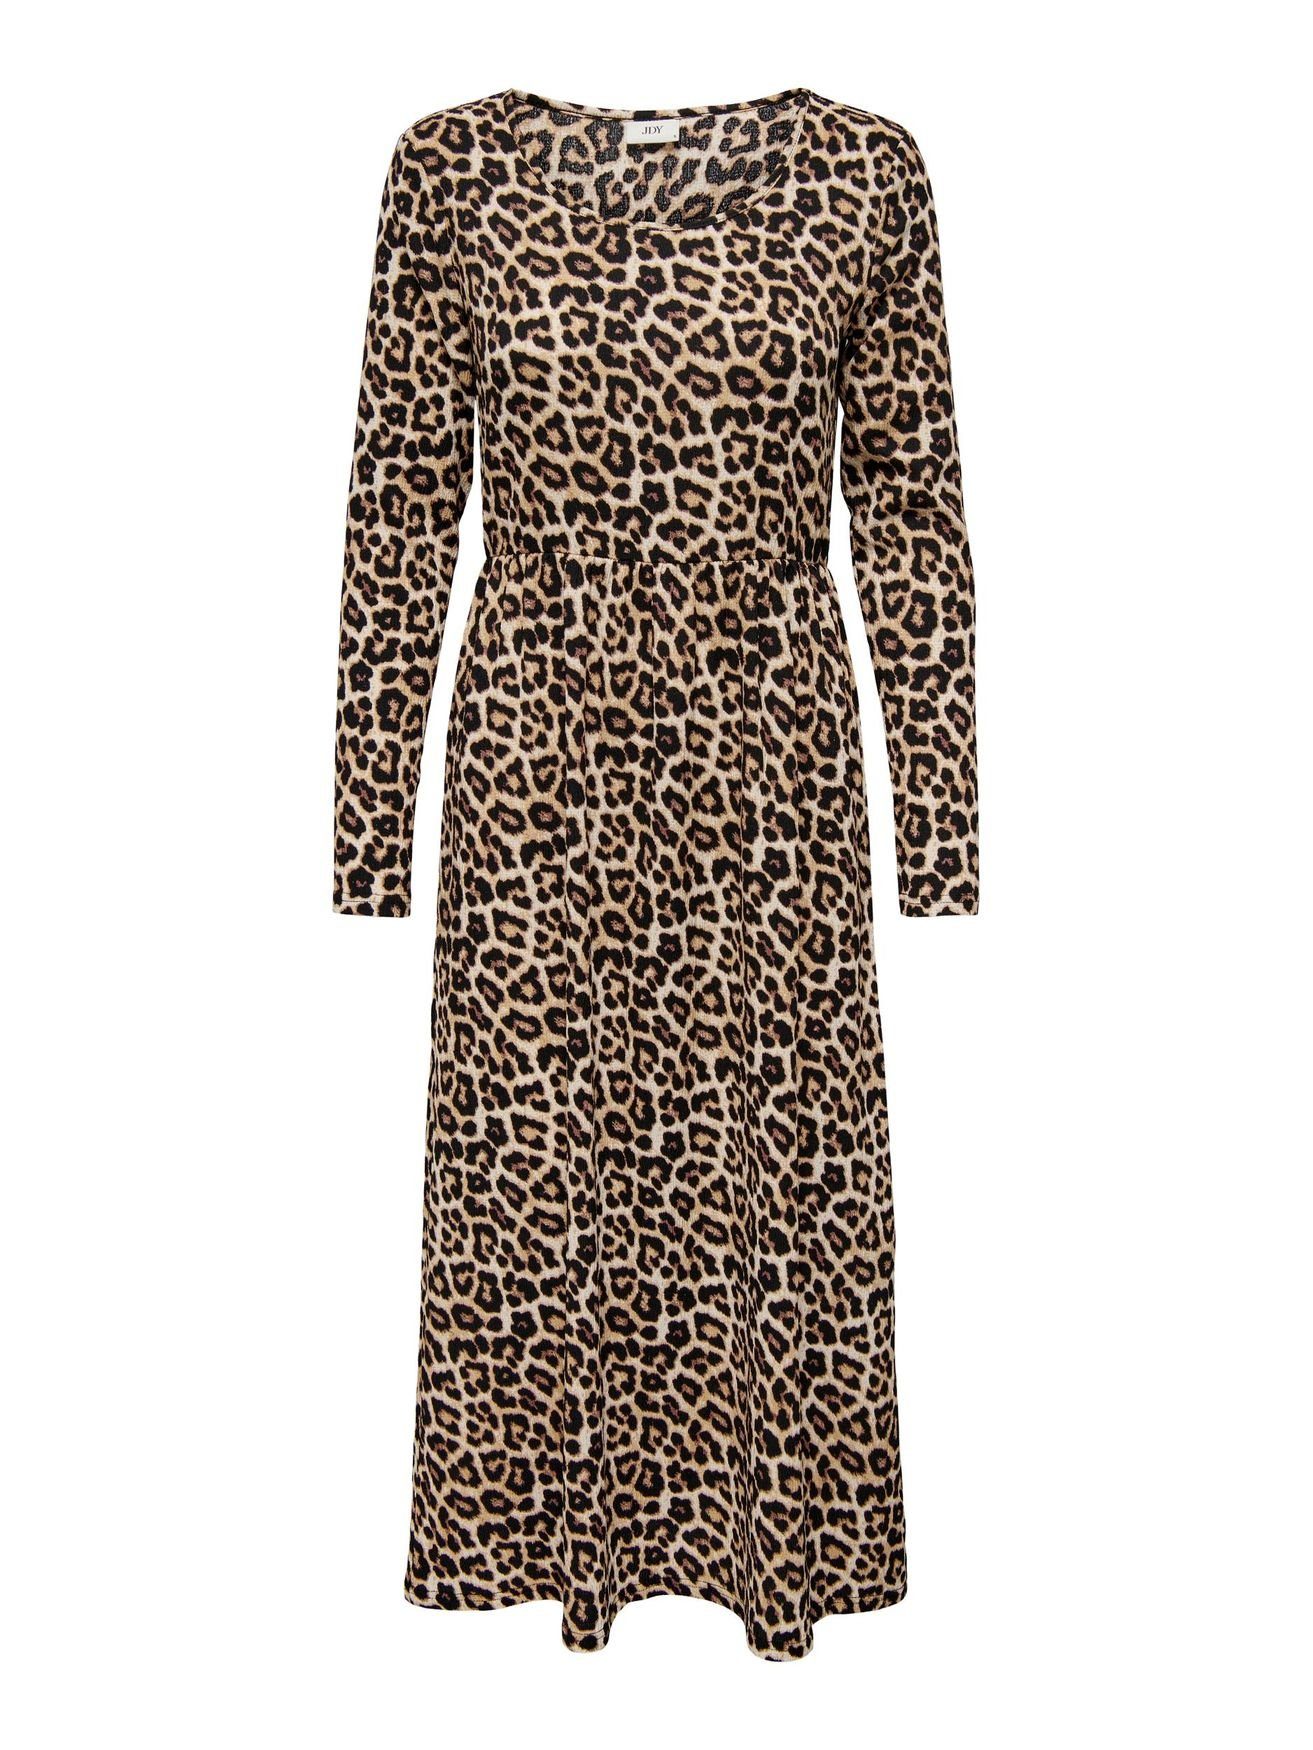 Eröffnungsverkauf JACQUELINE de YONG Shirtkleid Langes Braun Midi Animal Kleid 5412 Print Dress JDYLOTUS Langarm in (lang)